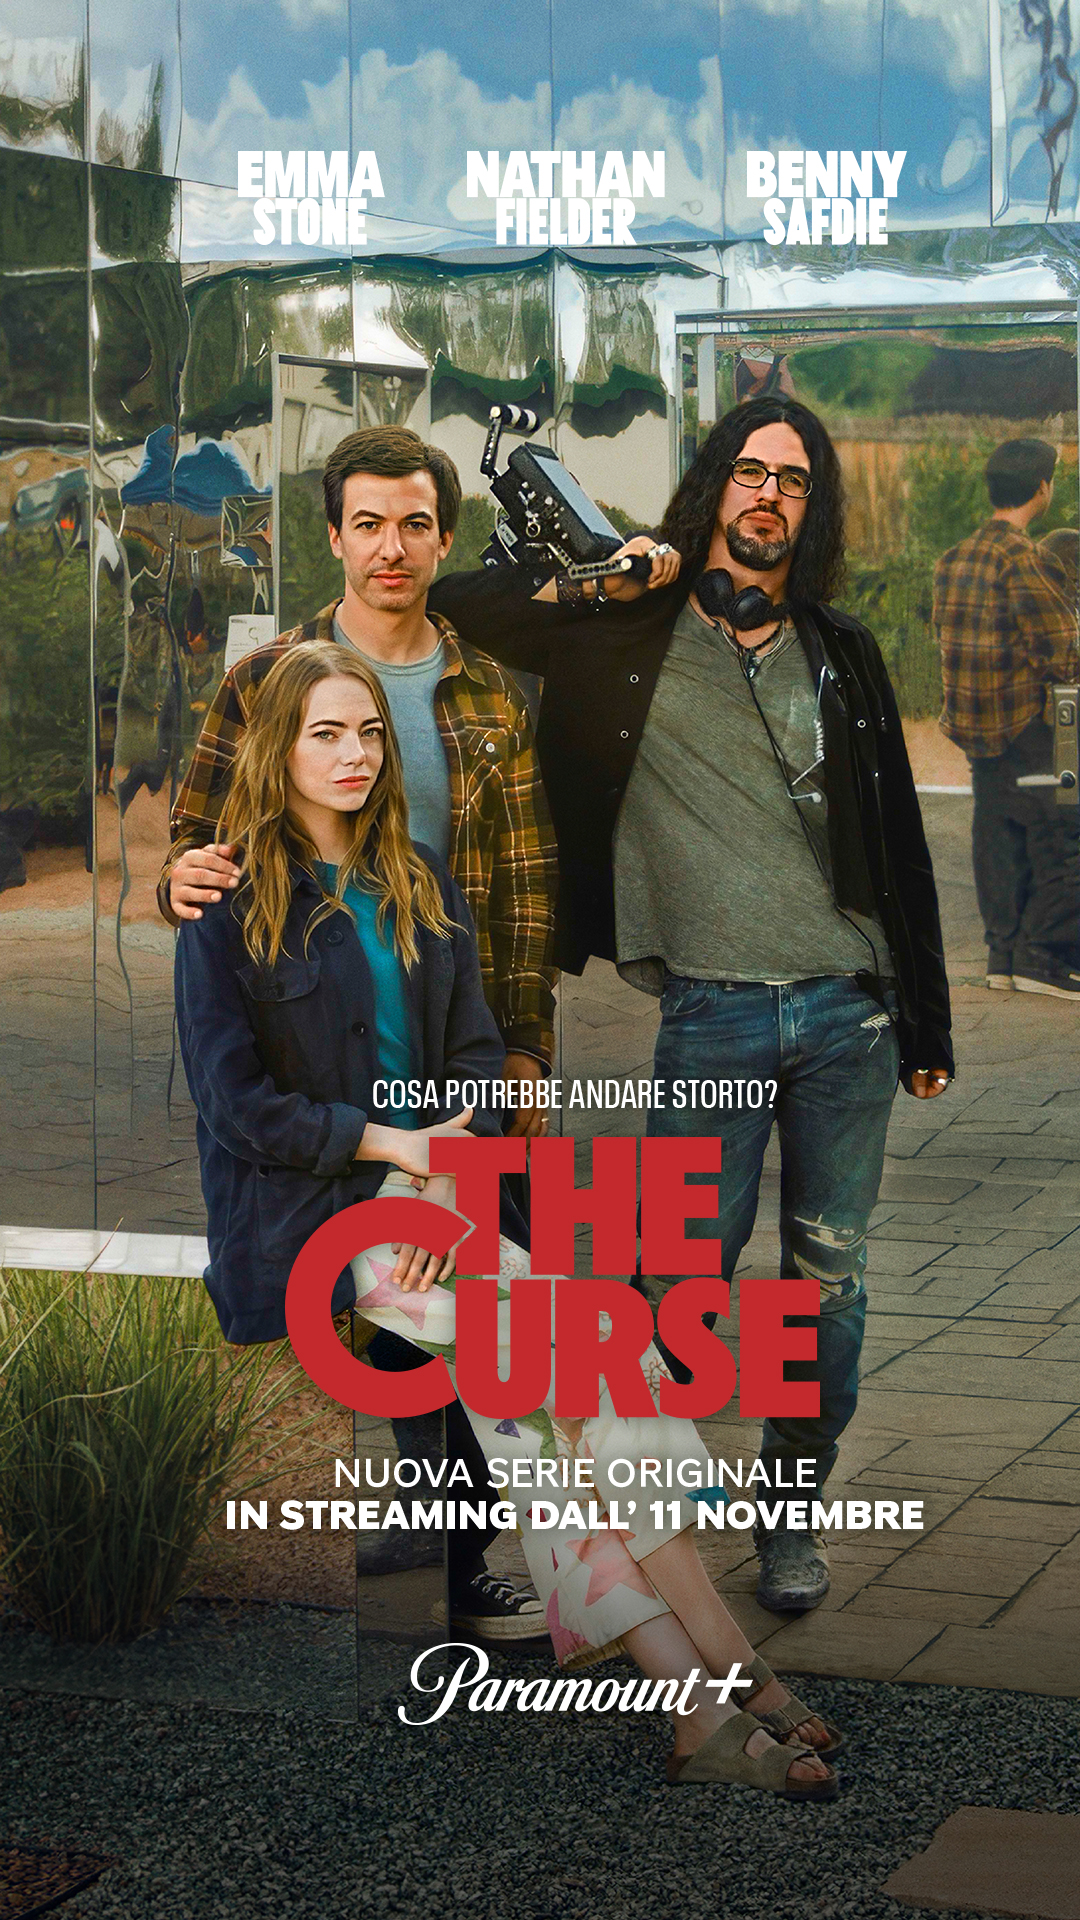 The Curse: il nuovo trailer della serie Tv con Emma Stone